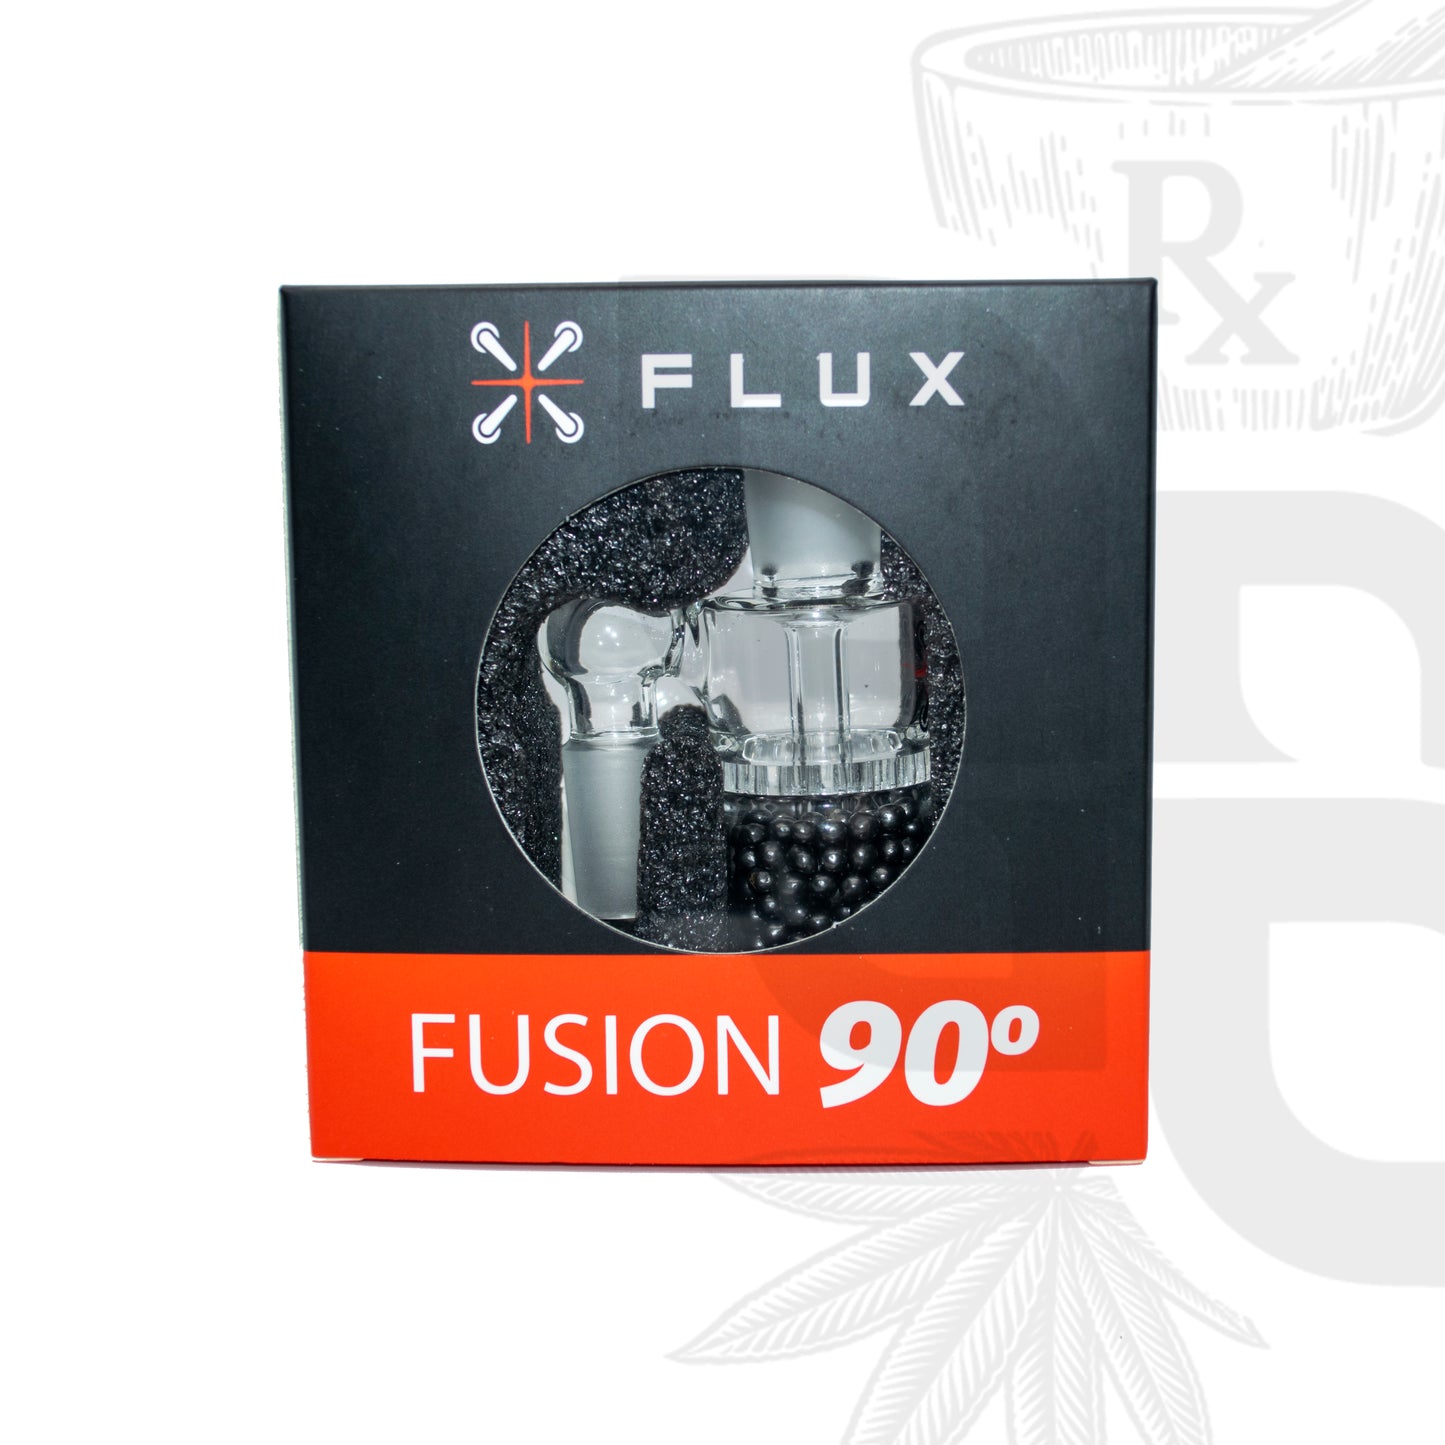 Flux -Fusion 90